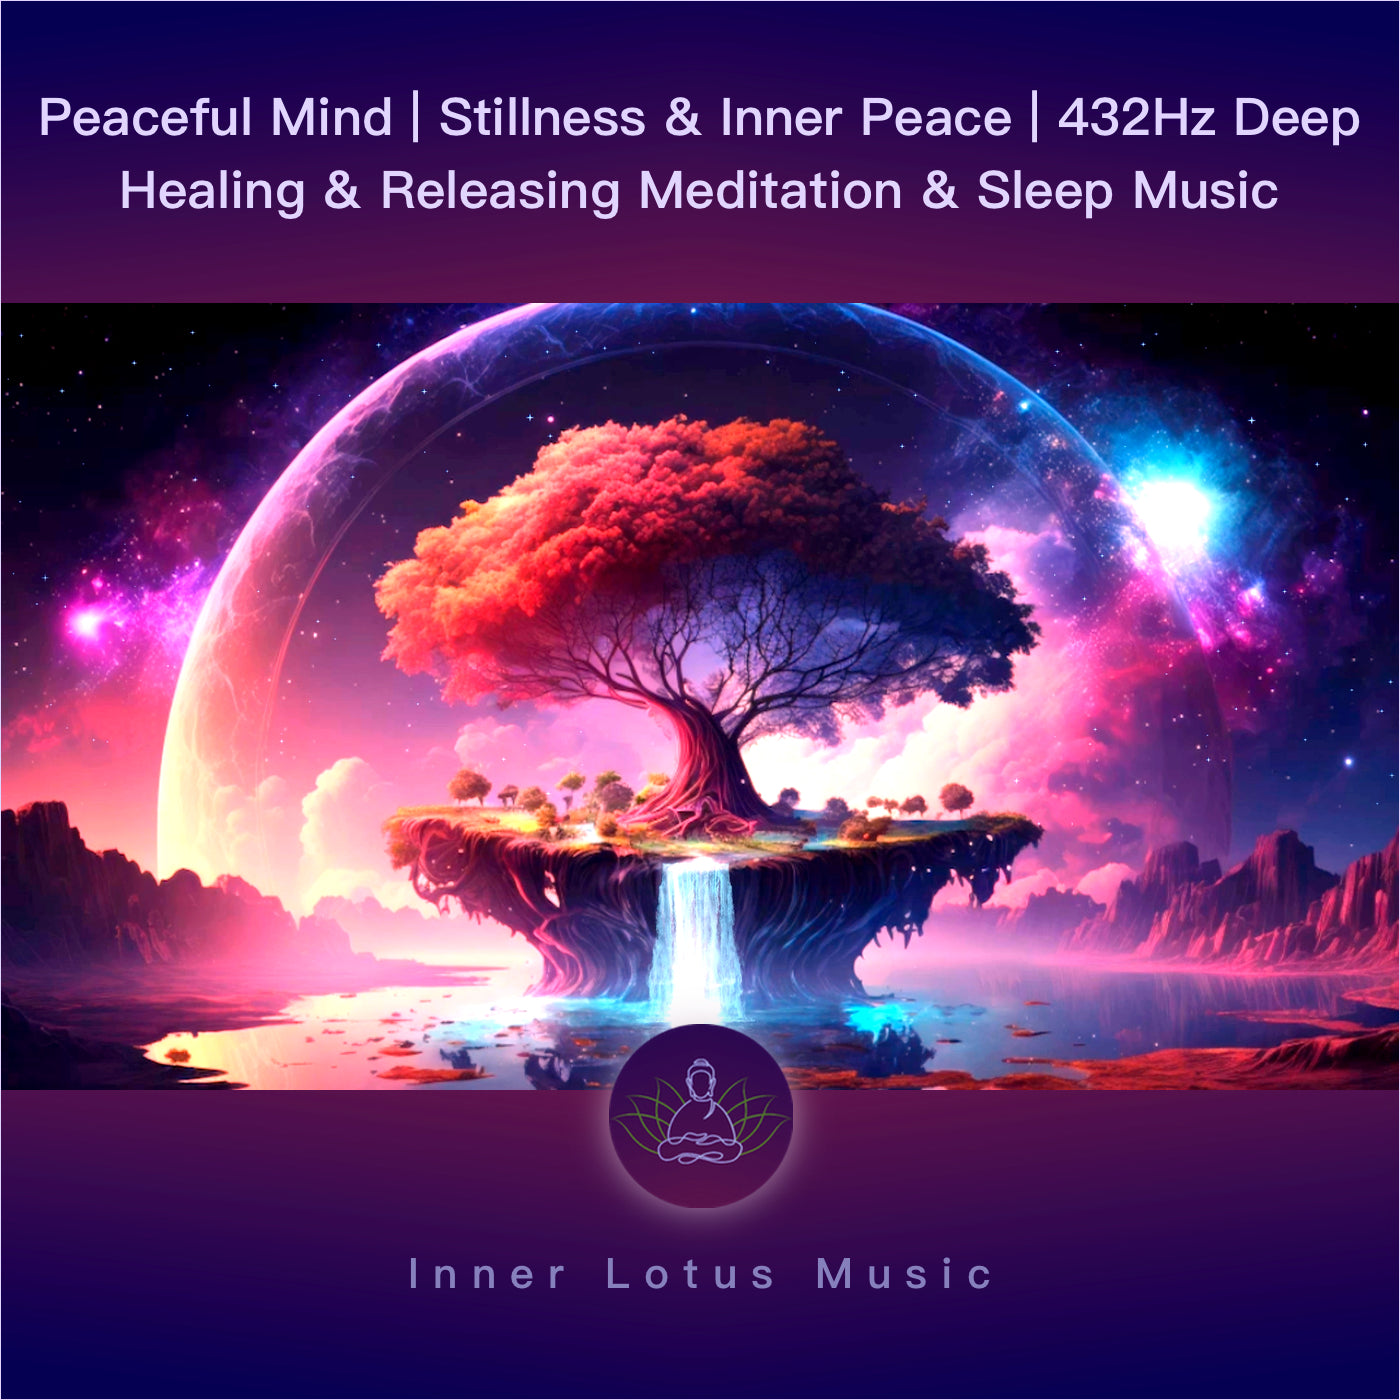 Paix de l’Esprit | Calme & Silence Intérieur | Musique 432Hz Fréquence Guérison, Méditation, Sommeil